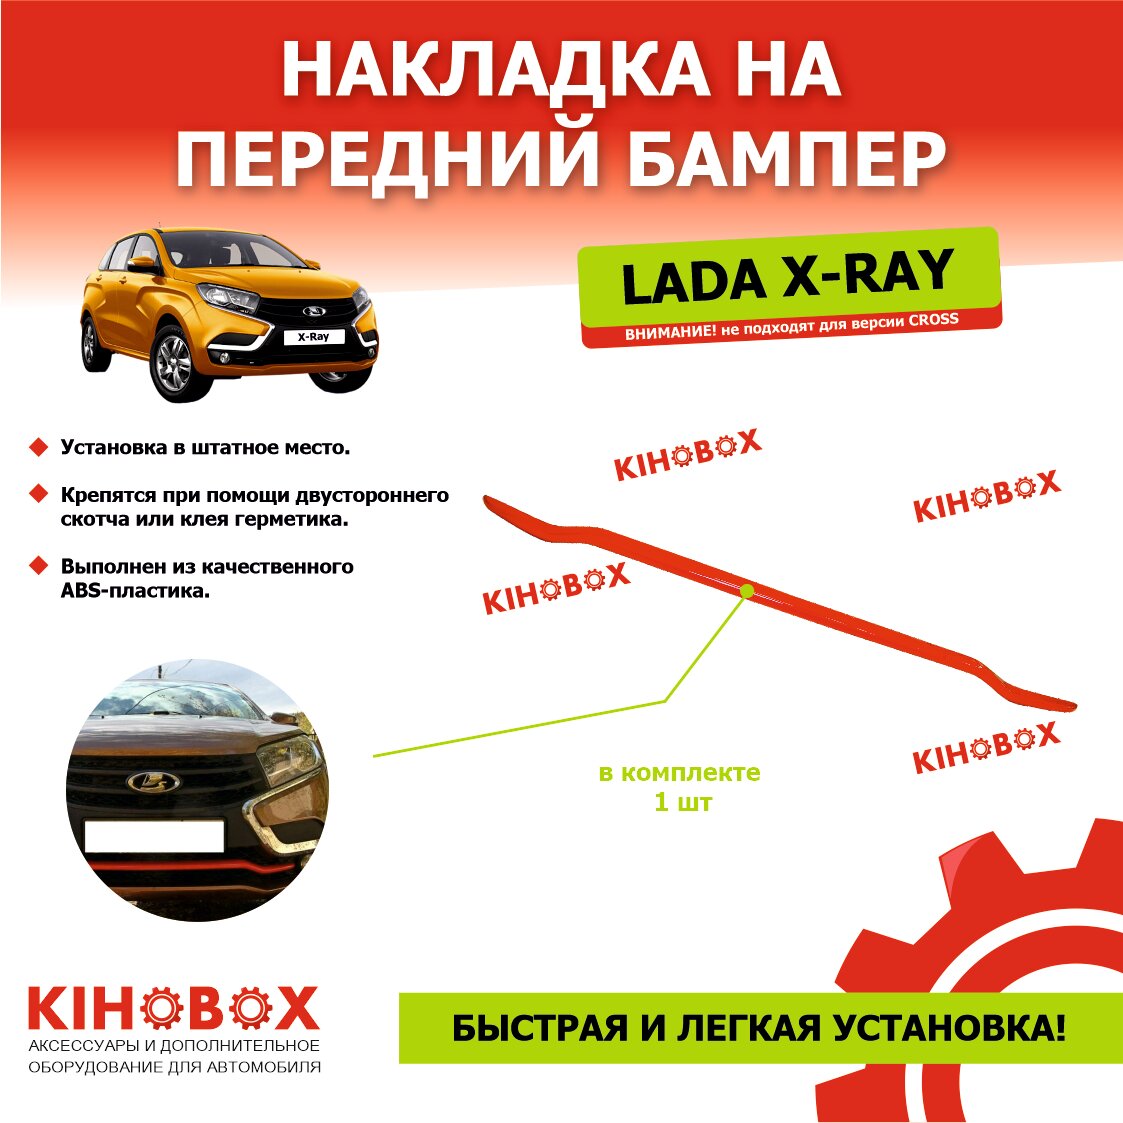 Накладка на передний бампер красная Лада Х Рей, КРОМЕ версии CROSS - KIHOBOX АРТ 5520702